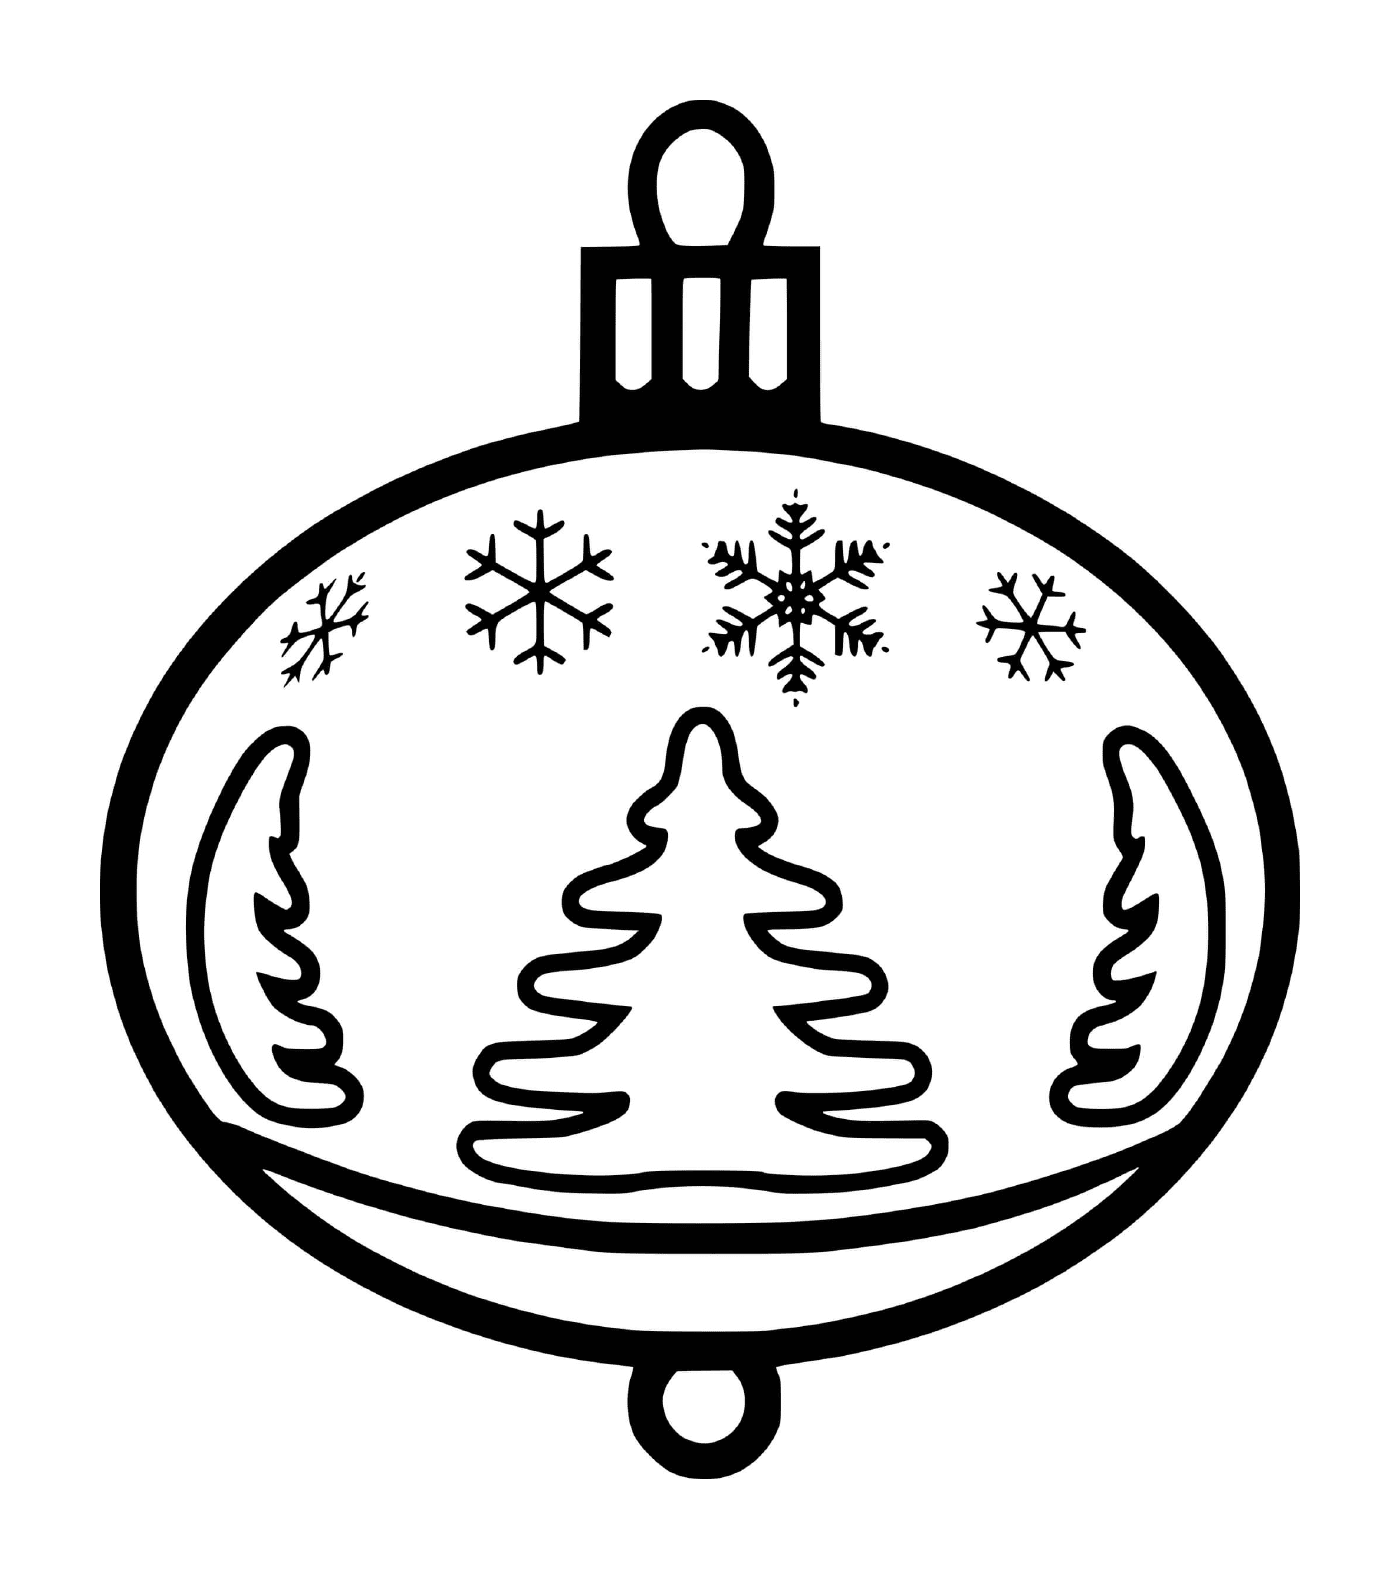  Una bola de Navidad con copos de nieve y abetos 